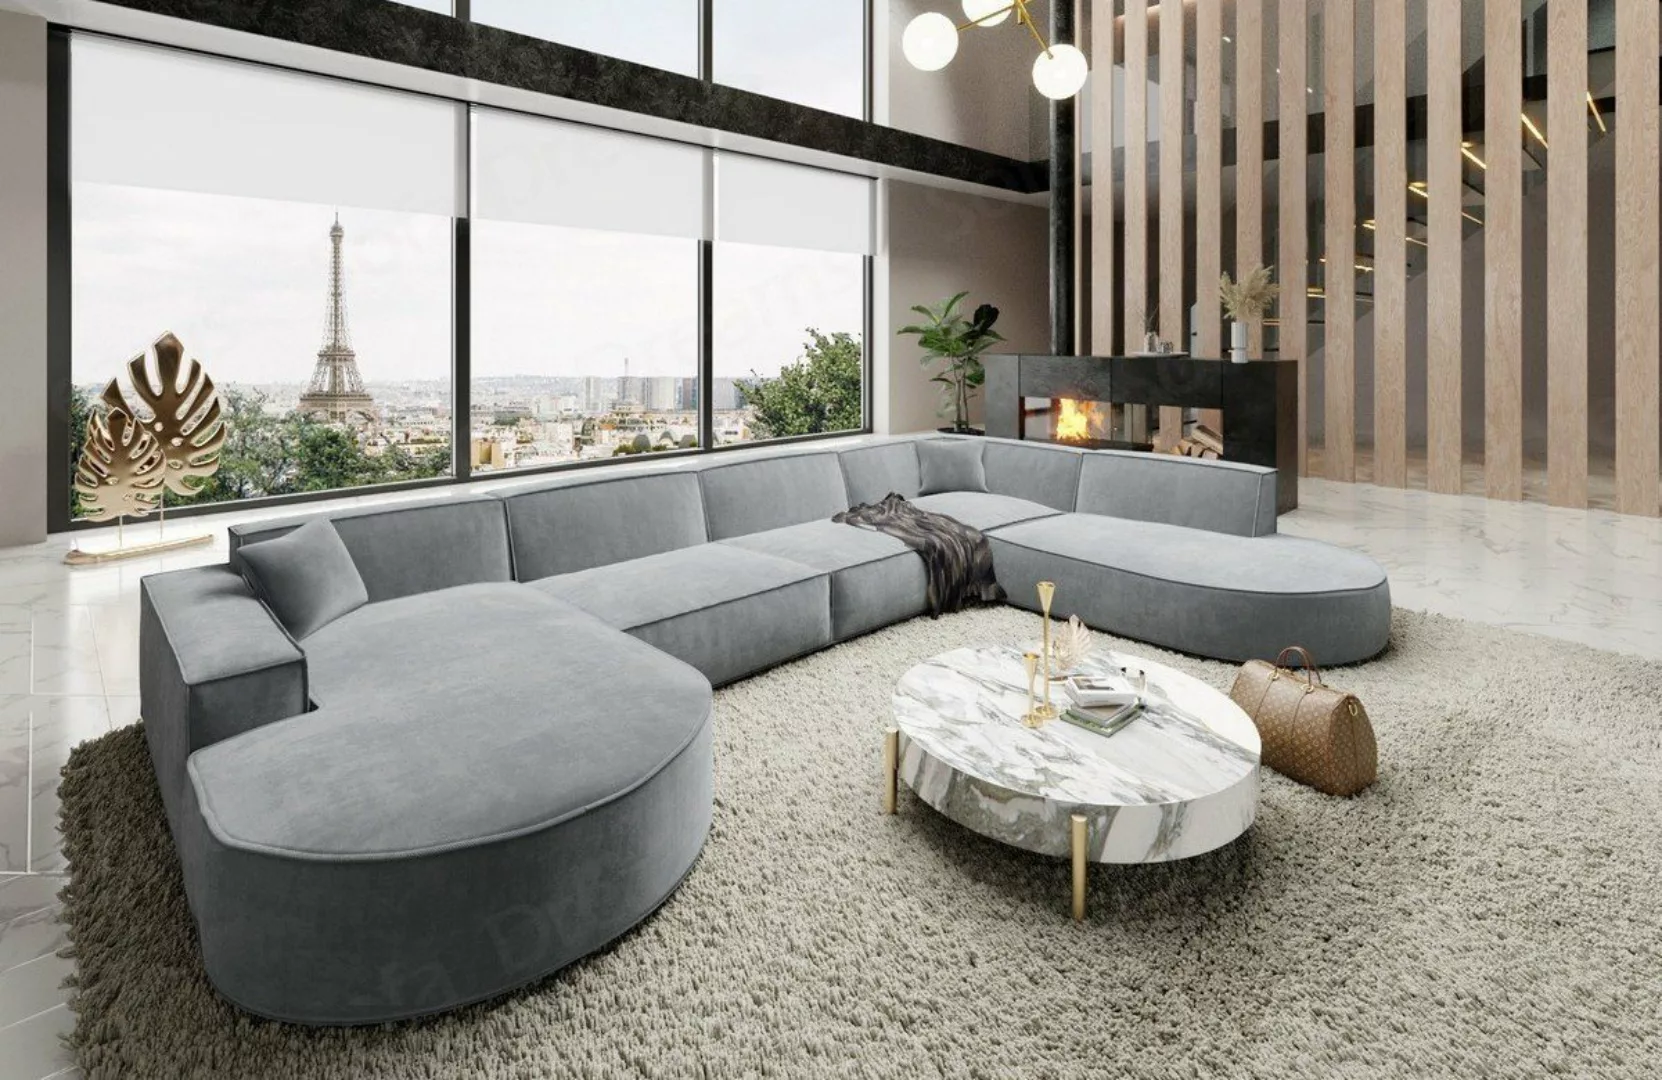 Sofa Dreams Wohnlandschaft Designer Stoff Sofa Modern Couch Alegranza U For günstig online kaufen